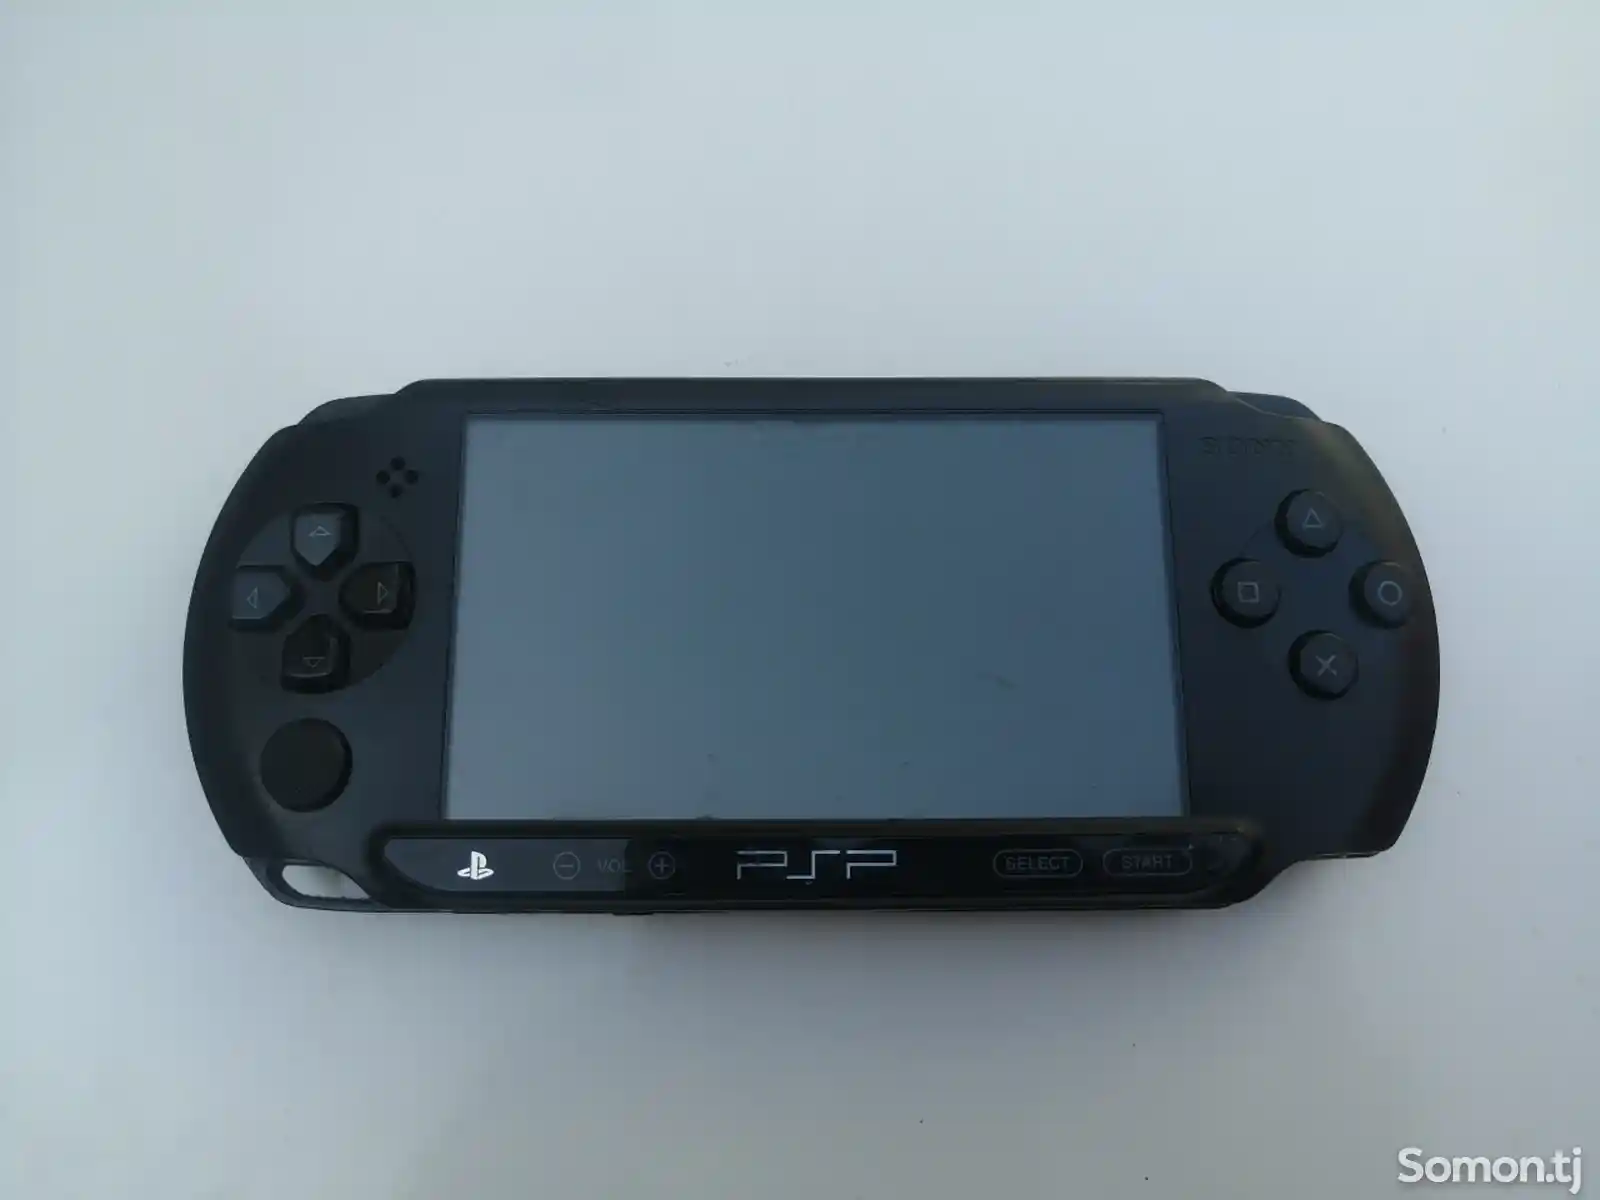 Игровая приставка Sony PSP